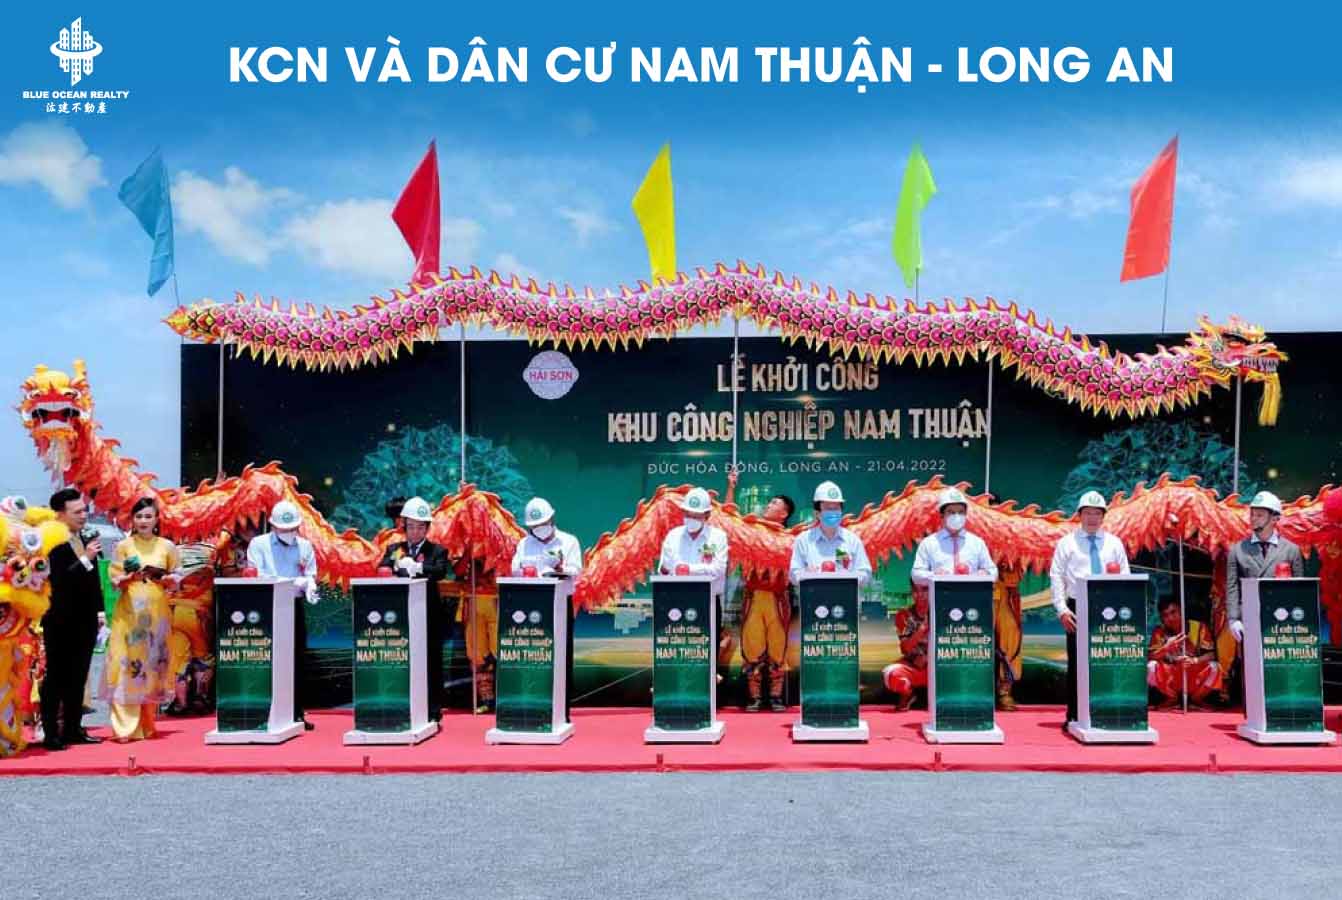 Khu công nghiệp và dân cư Nam Thuận - Long An